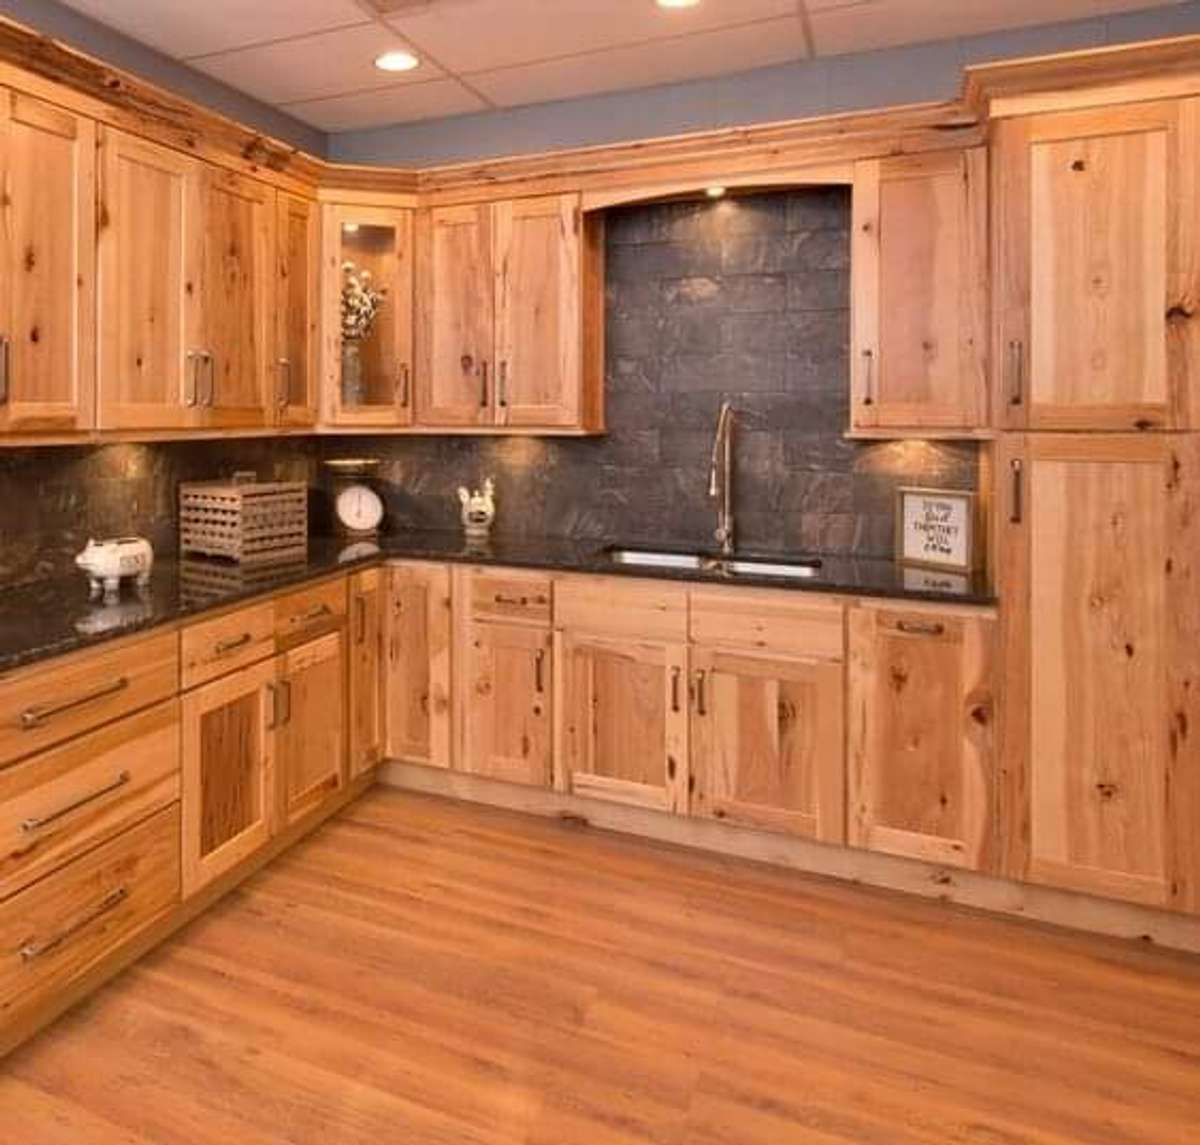 #KitchenCabinet
Wooden Kitchen